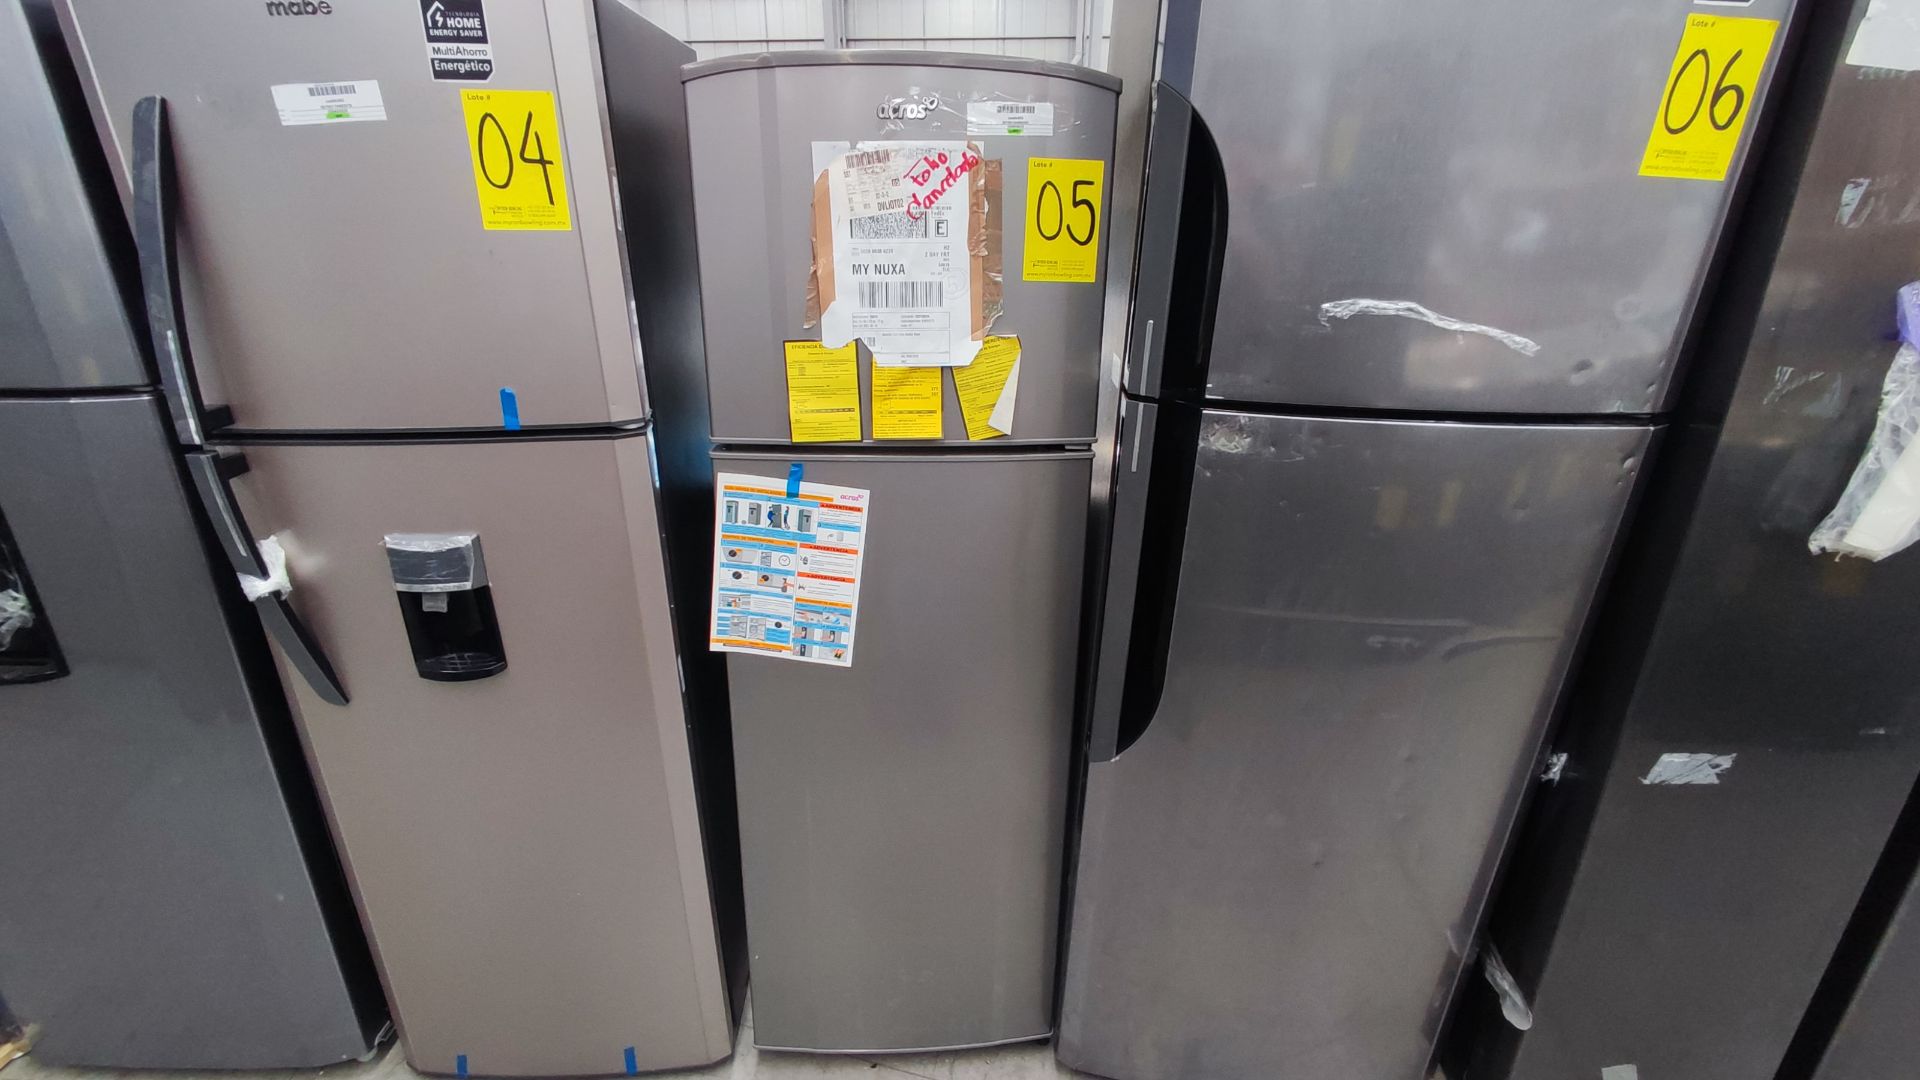 1 Refrigerador Marca Whirlpool, Modelo AT9007G03, Serie 1333816, Color Gris Detalles Estéticos. Fav